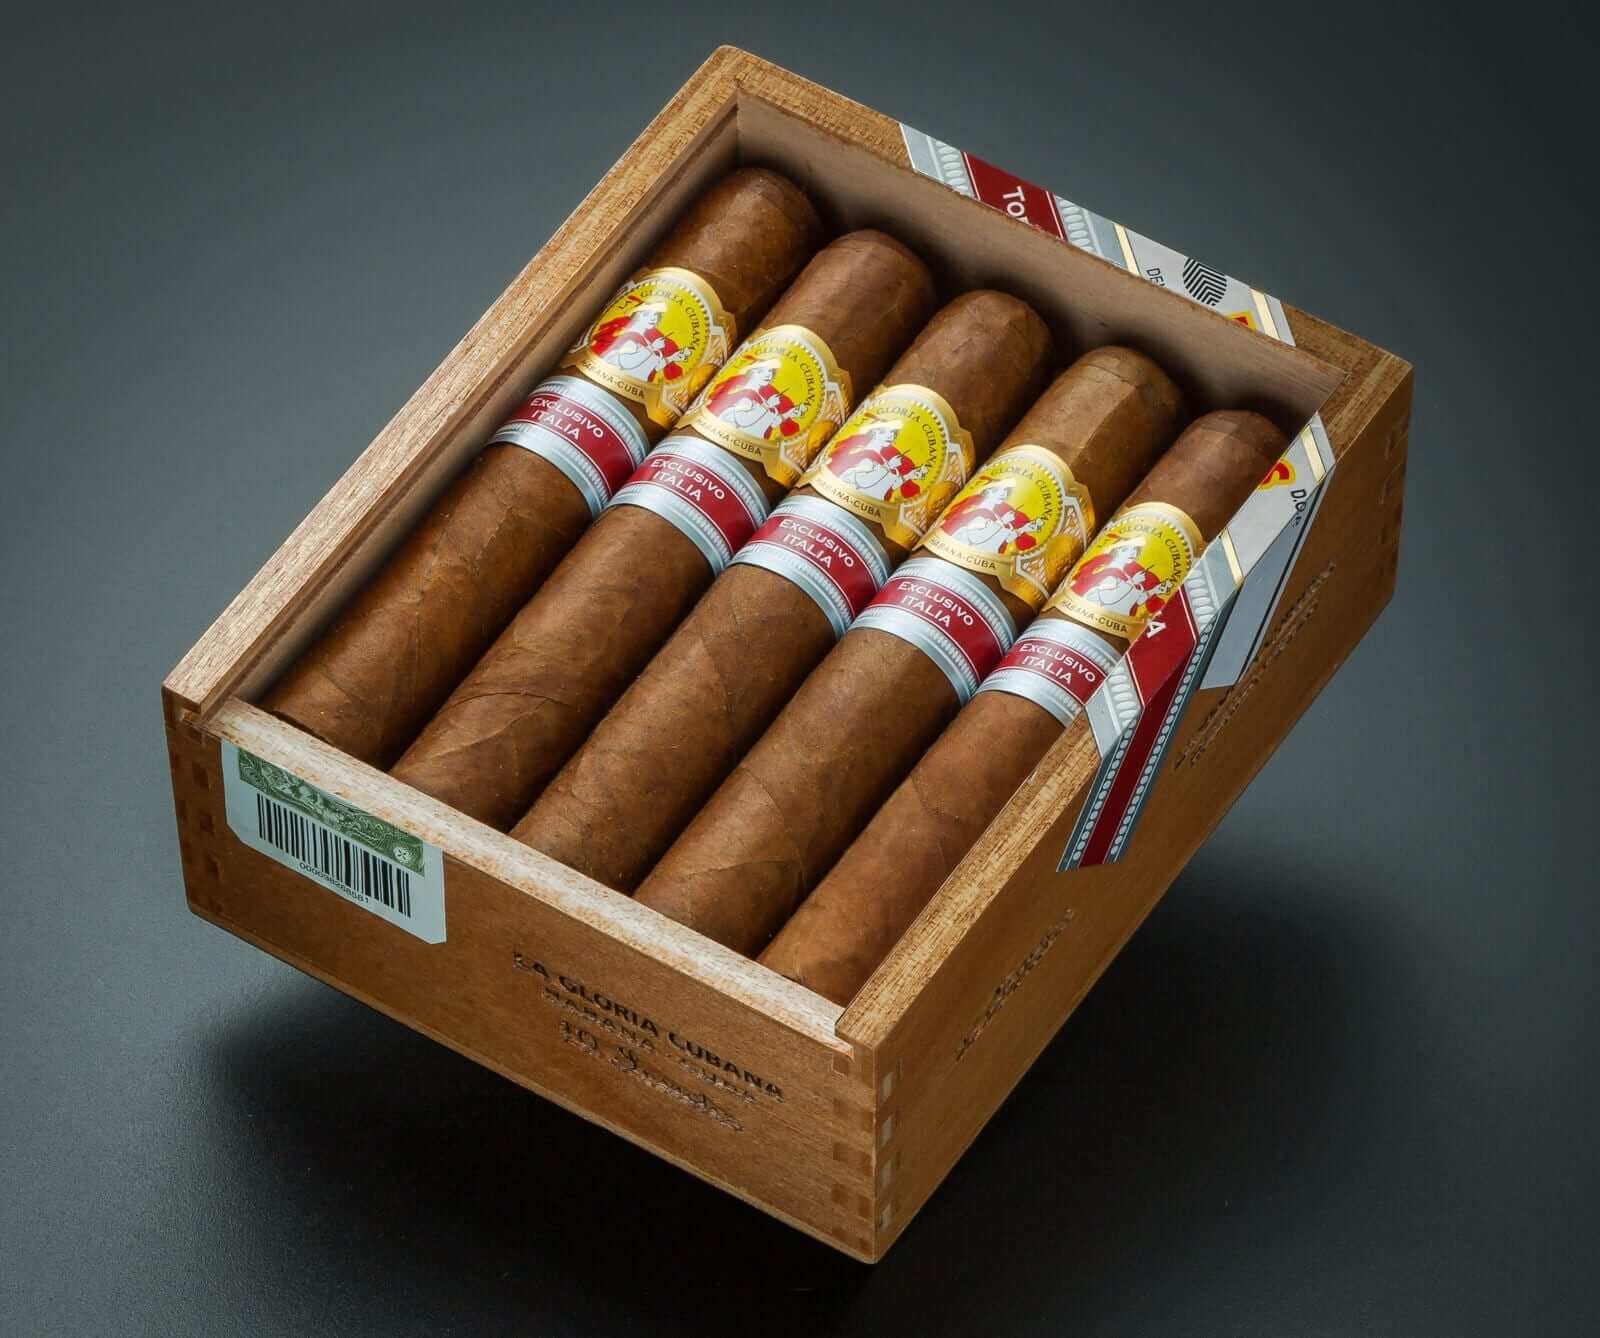 Habanos presenta una nuova classificazione dei sigari cubani - Tabaccheria  Toto13